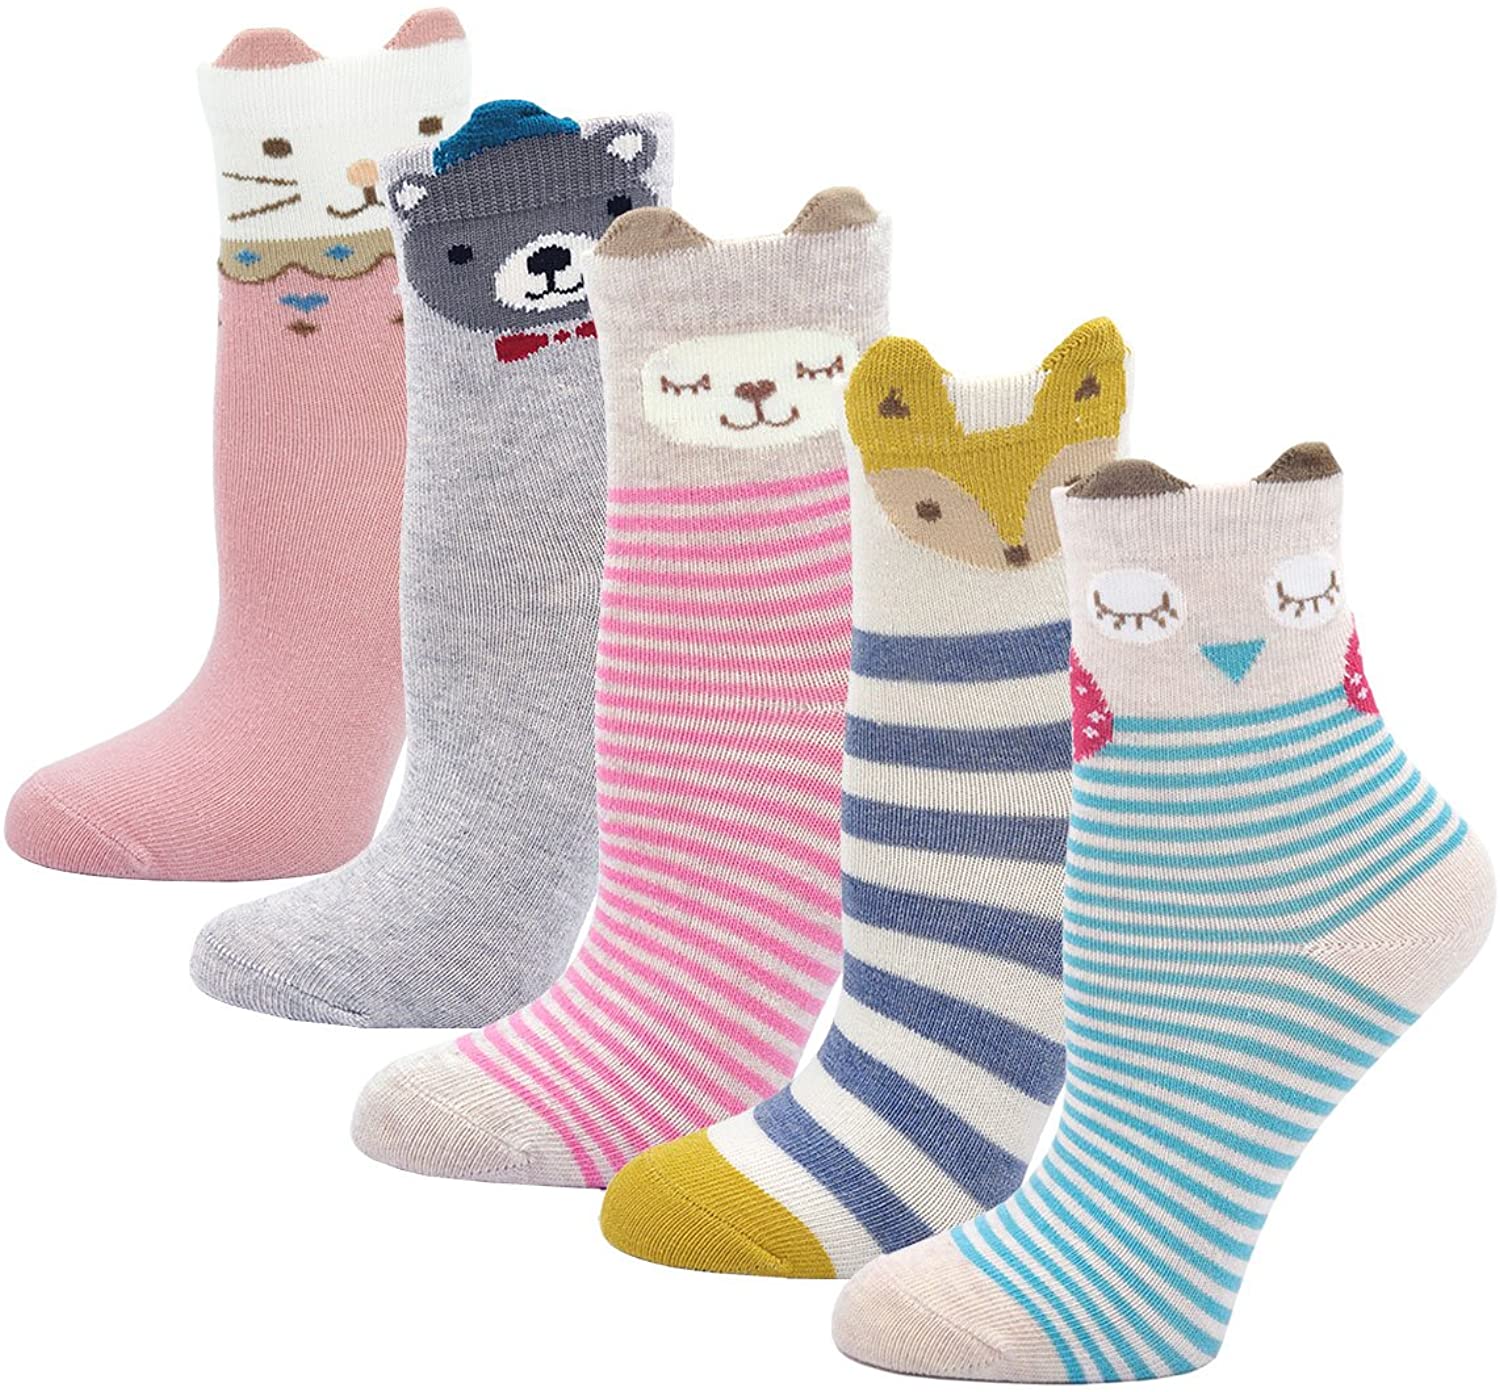 Cotone Calzini per Bambina, Animale Cartone Animato Calze alla Caviglia per Ragazze, 2-11 Anni, 5 Paia